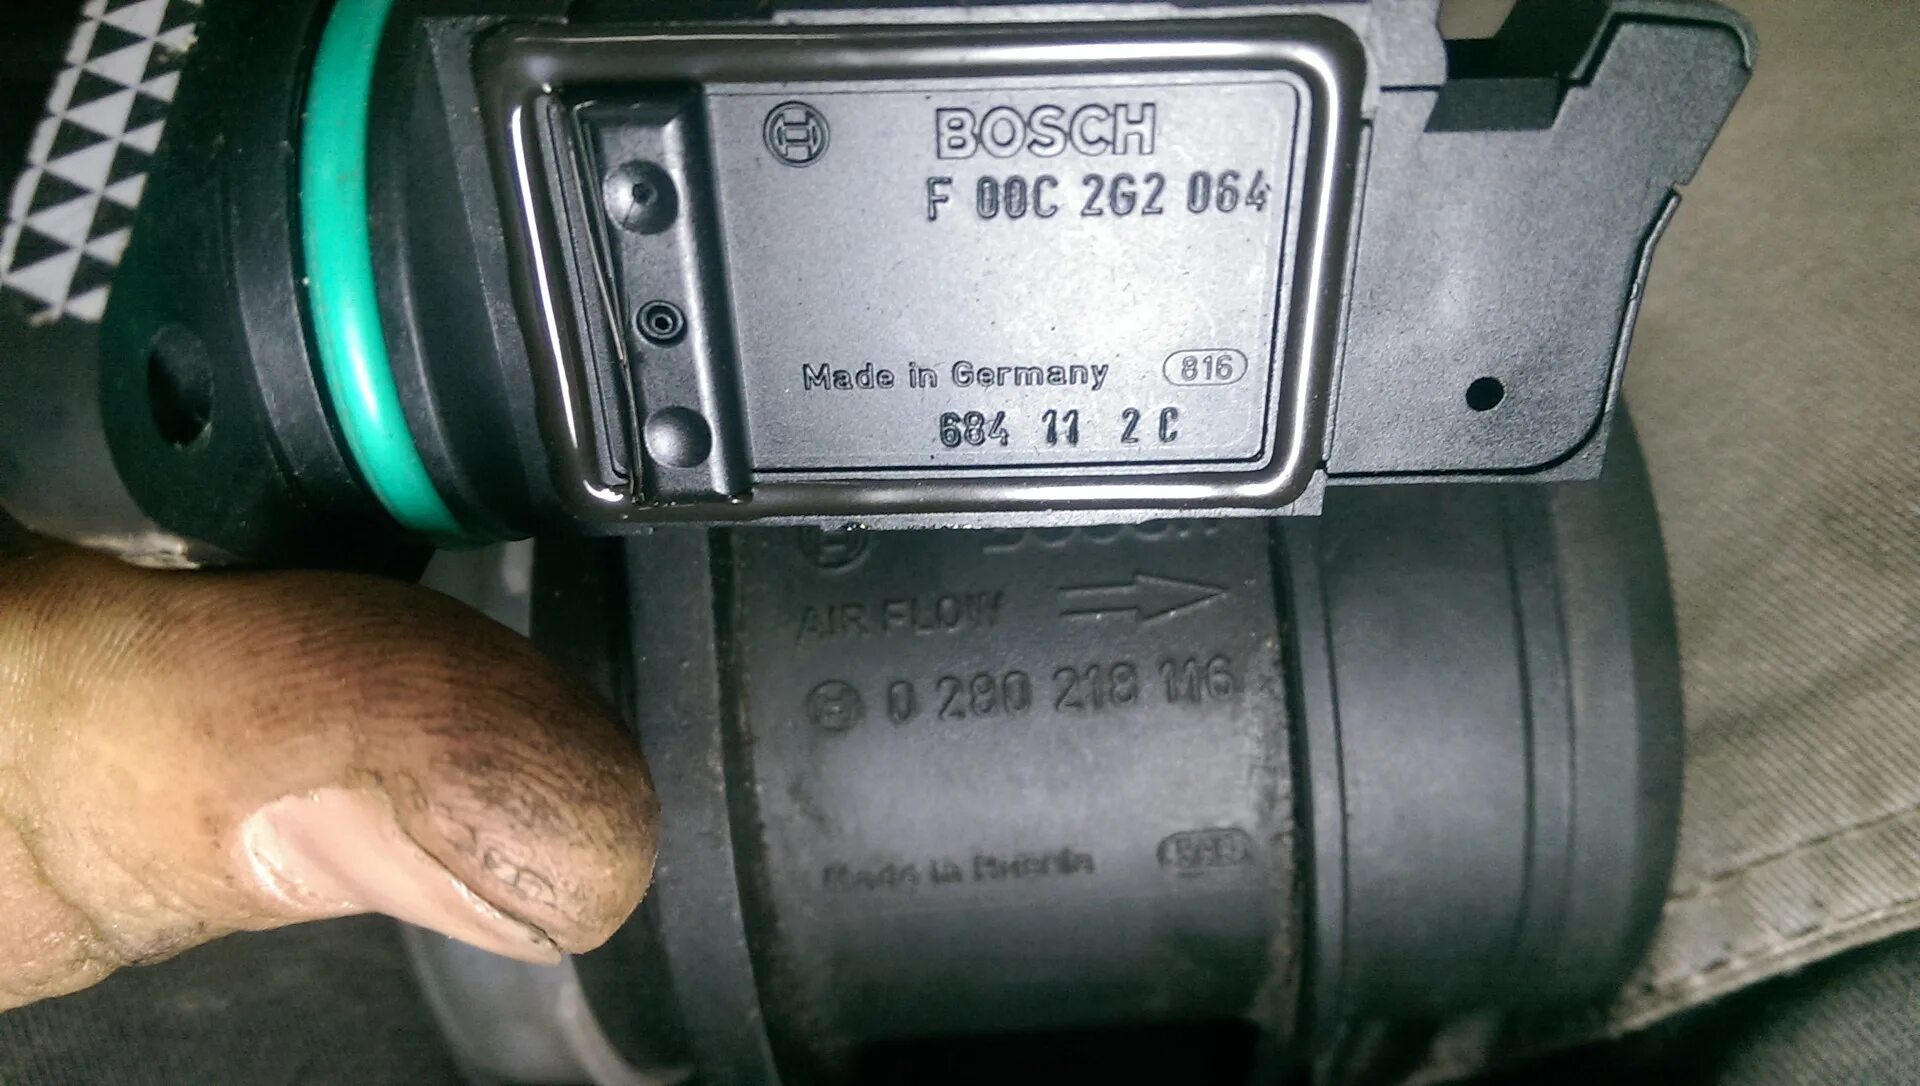 Блок дмрв. ДМРВ Калина 1.6 8кл. ДМРВ Калина 2 16 клапанов. ДМРВ 116 Bosch. ДМРВ Bosch f 00c 2g2 060 Озон.